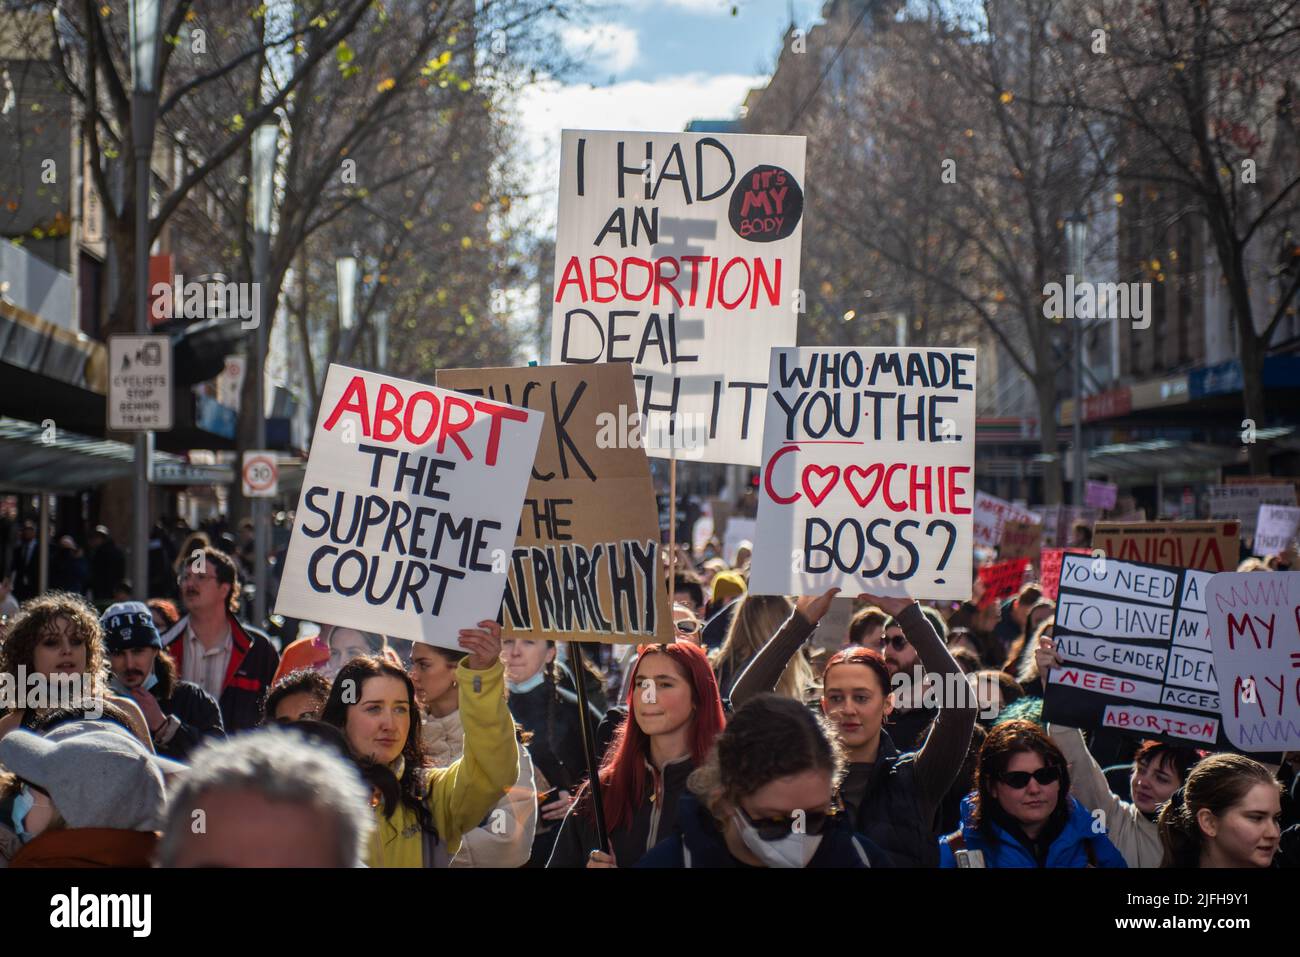 Melbourne, Australien. 2.. Juli 2022. Demonstranten halten bei einem solidaritätsmarsch für Abtreibungsrechte Zeichen. Quelle: Jay Kogler/Alamy Live News Stockfoto